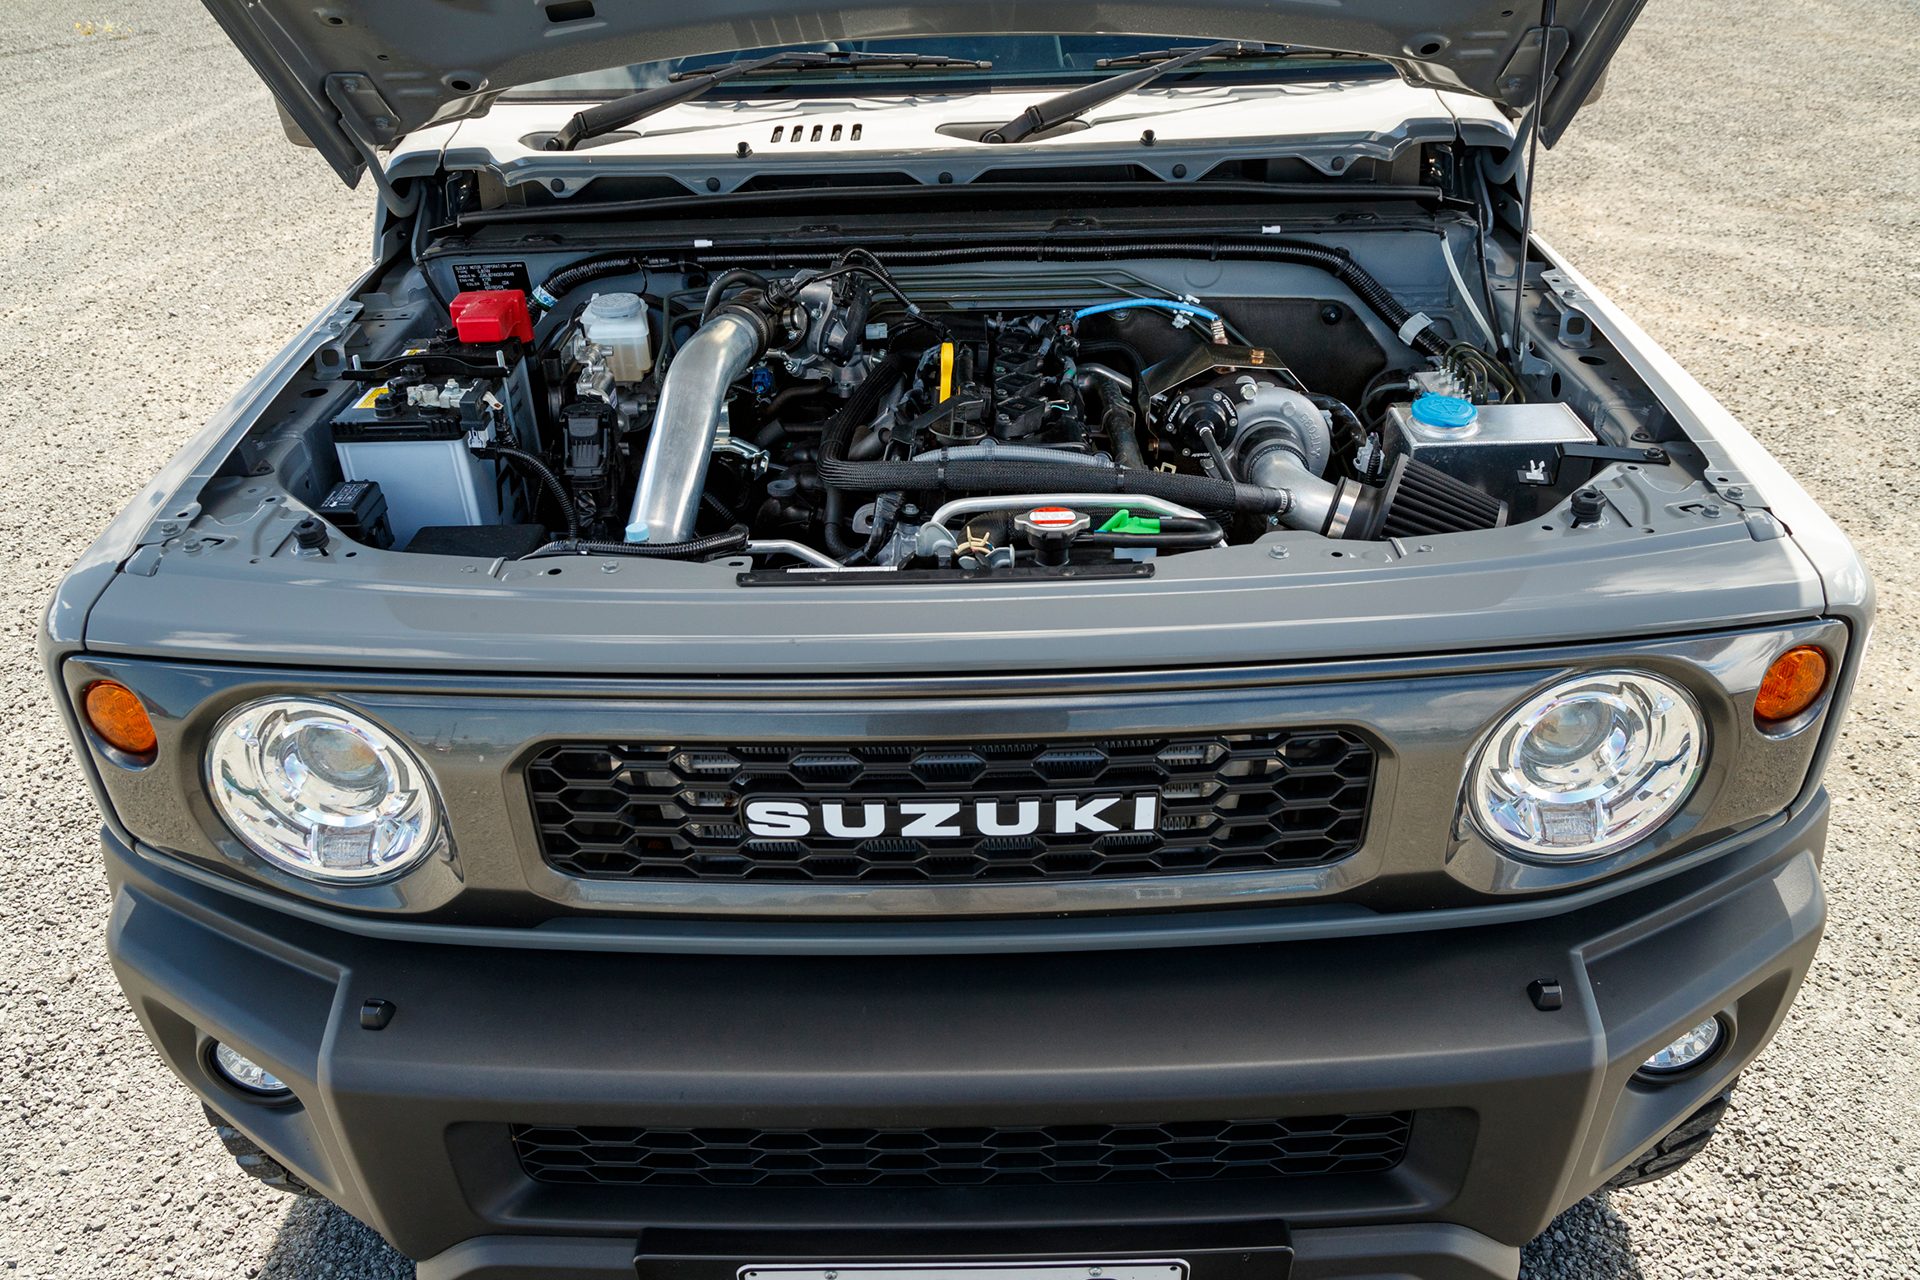 Suzuki Jimny Sierra Review & Road Test - Drive